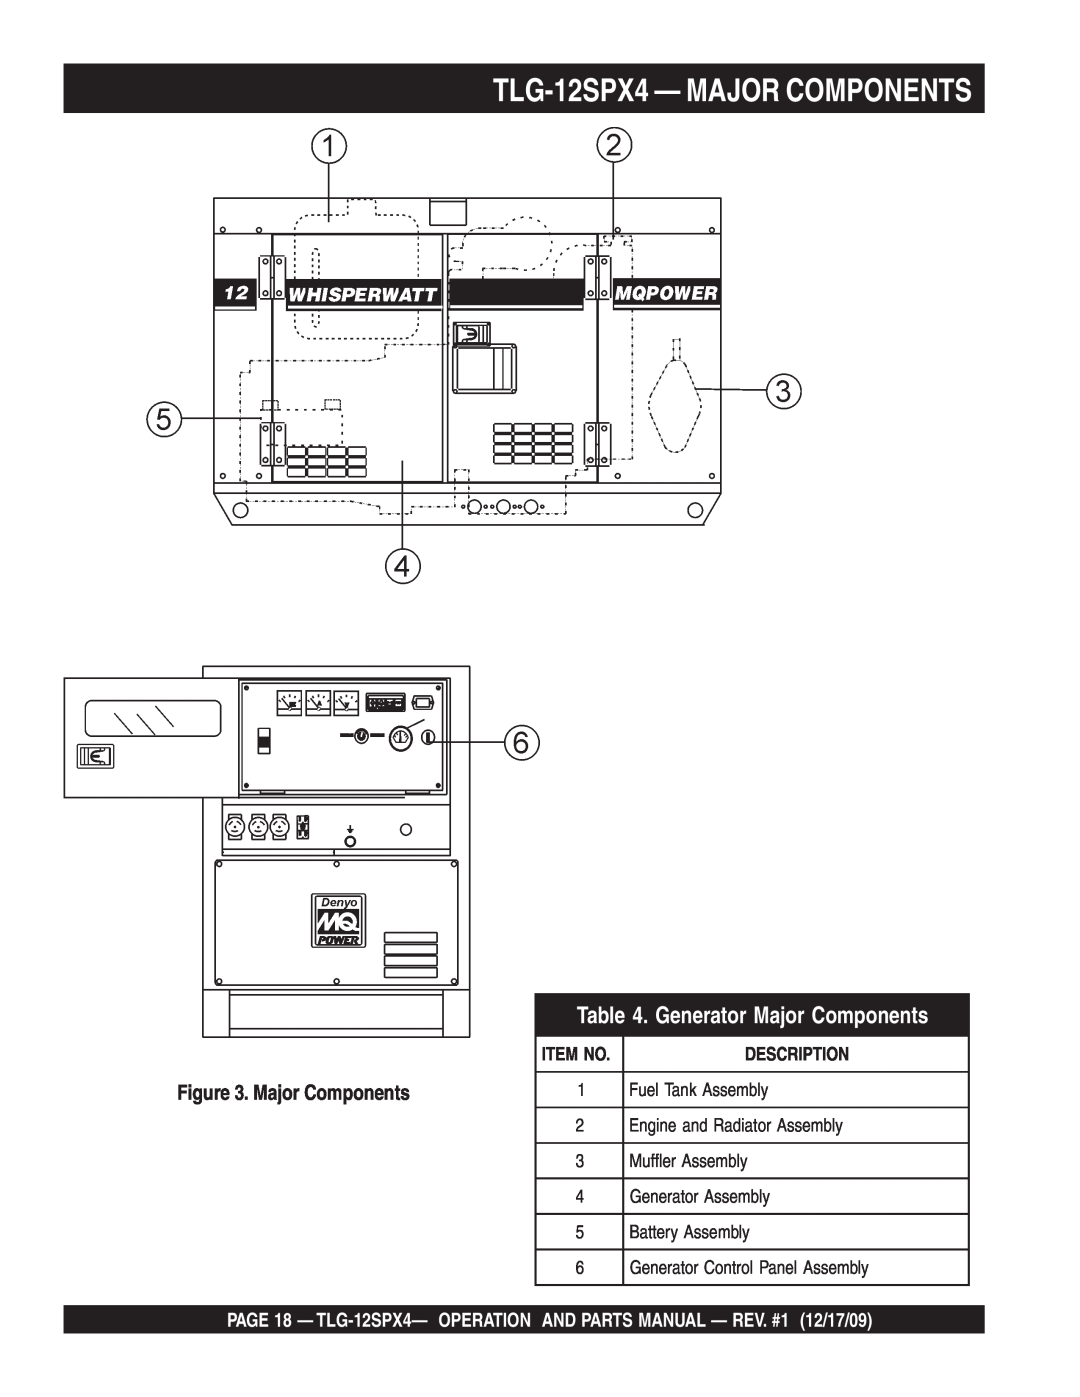 Multiquip operation manual TLG-12SPX4- MAJOR COMPONENTS, Generator Major Components, Description, Item No 